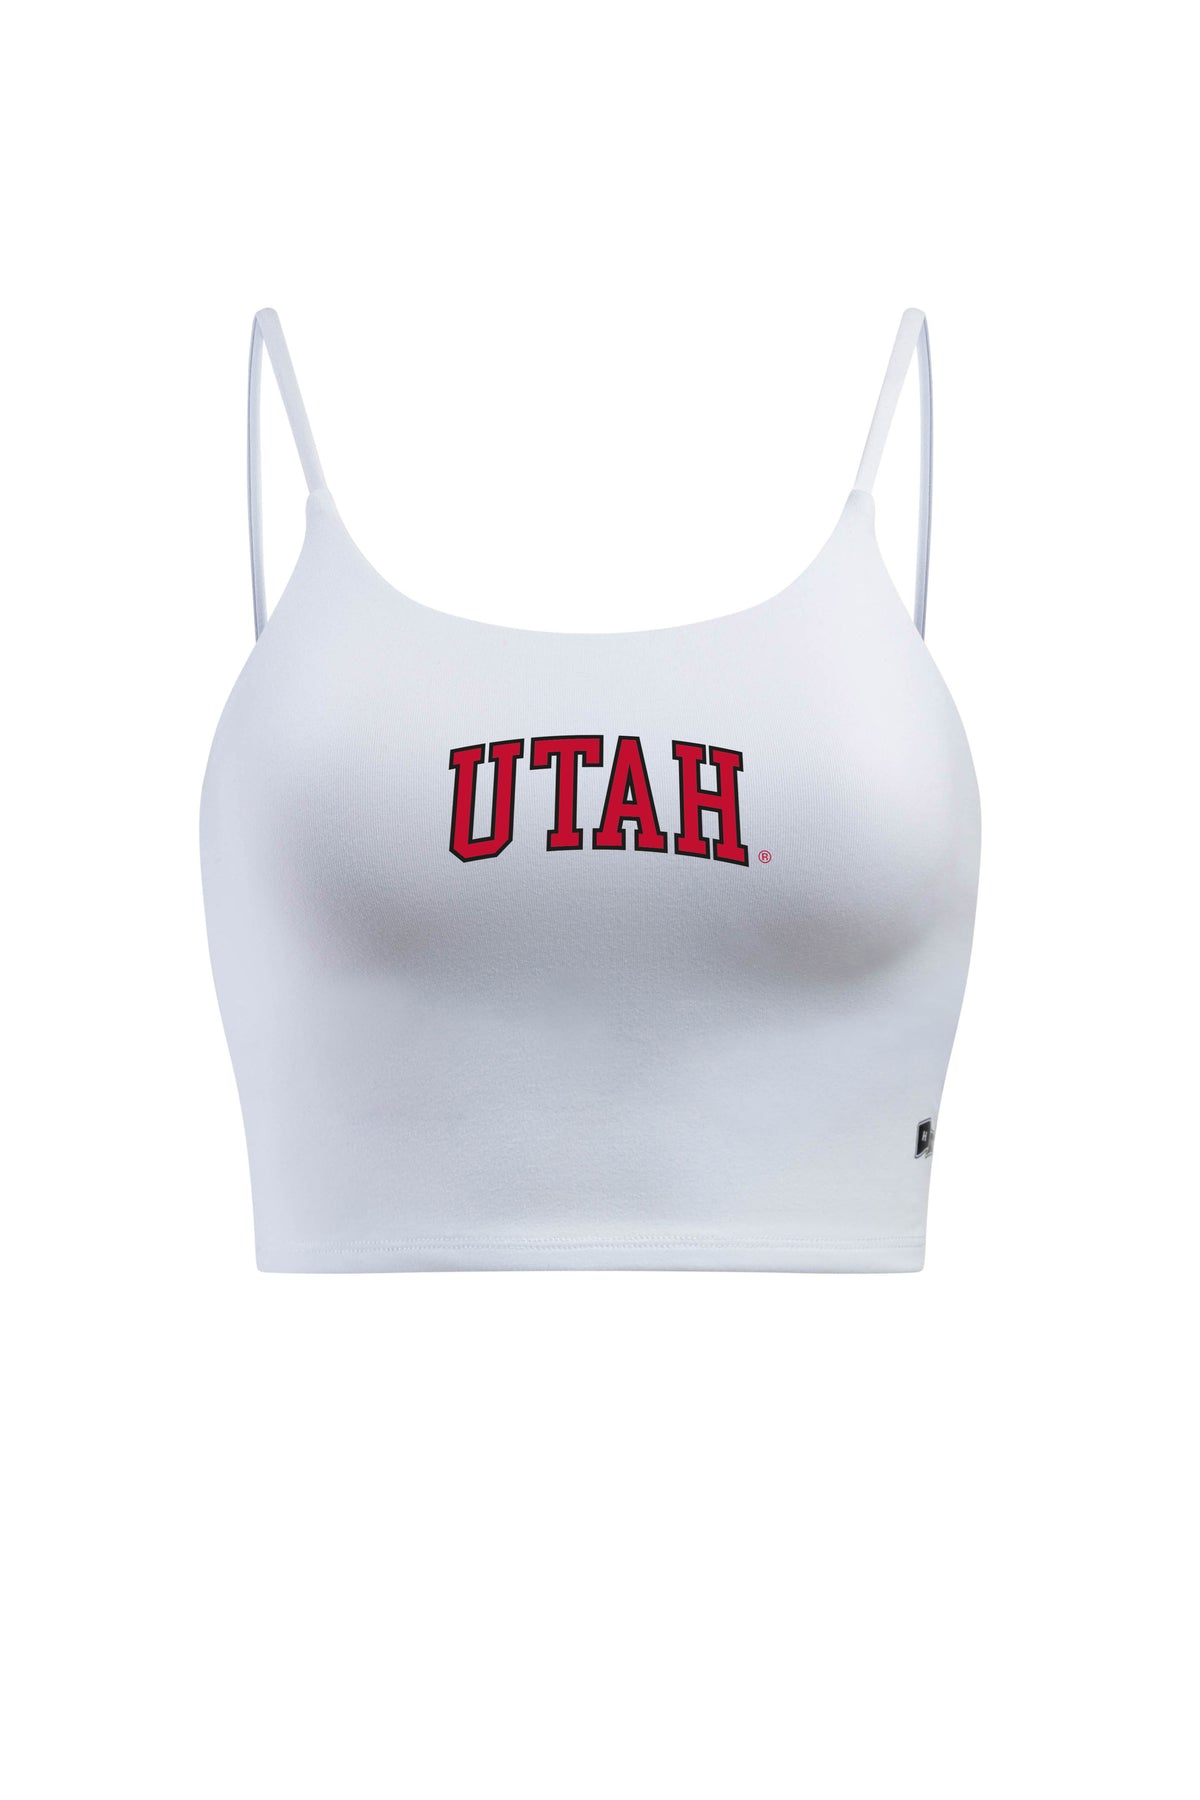 University of Utah Bra Tank Top